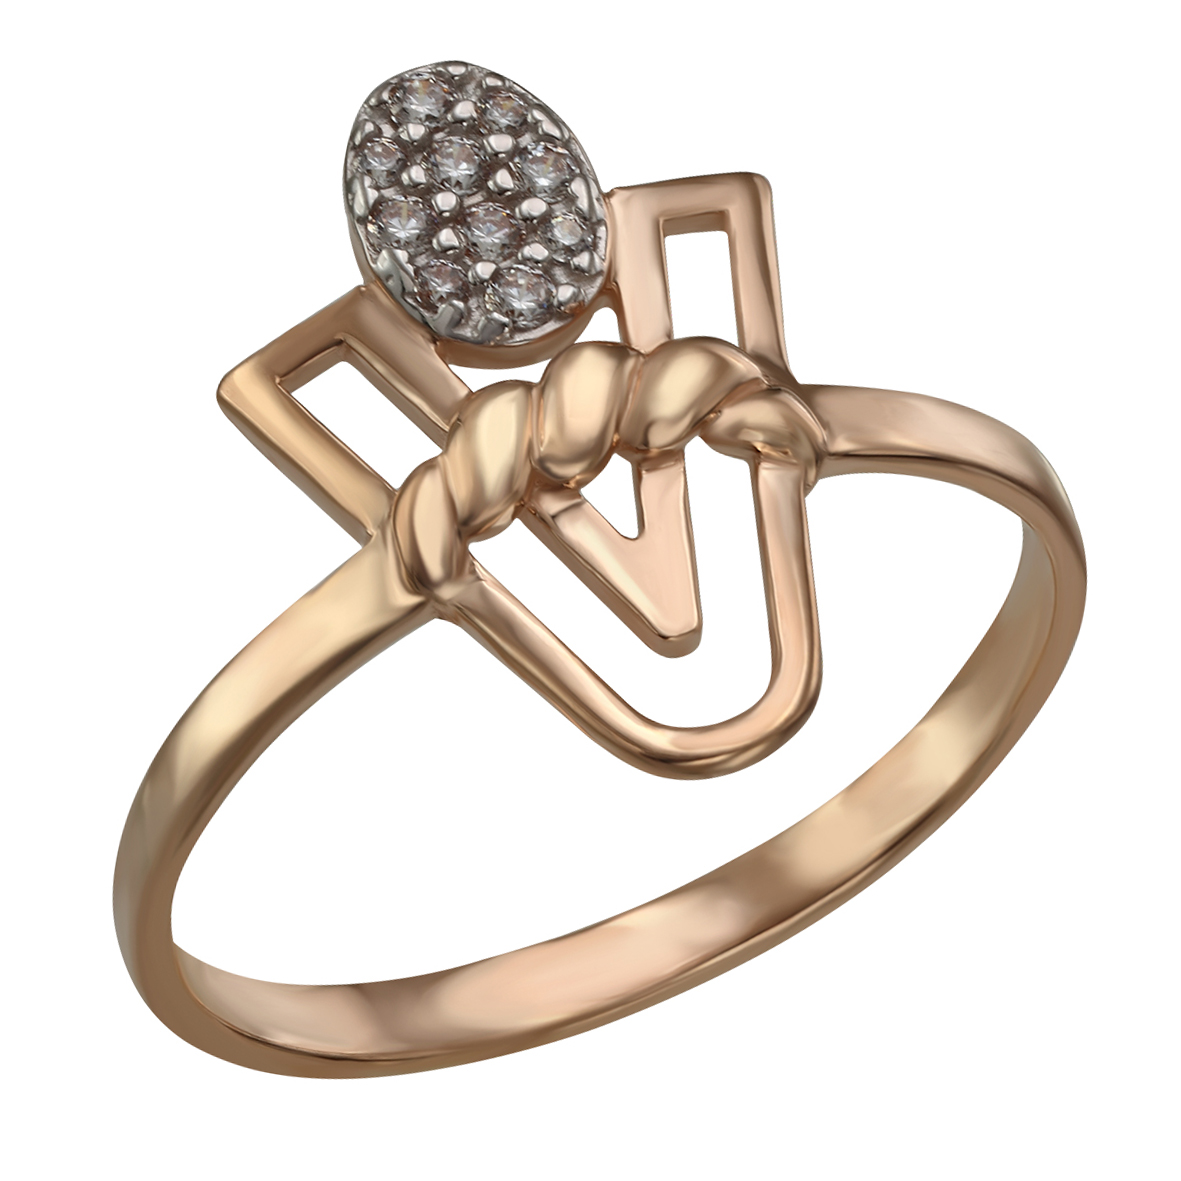 

Золотое кольцо "Элегантность" с фианитами Tango Jewellery Company 380430 размер 18